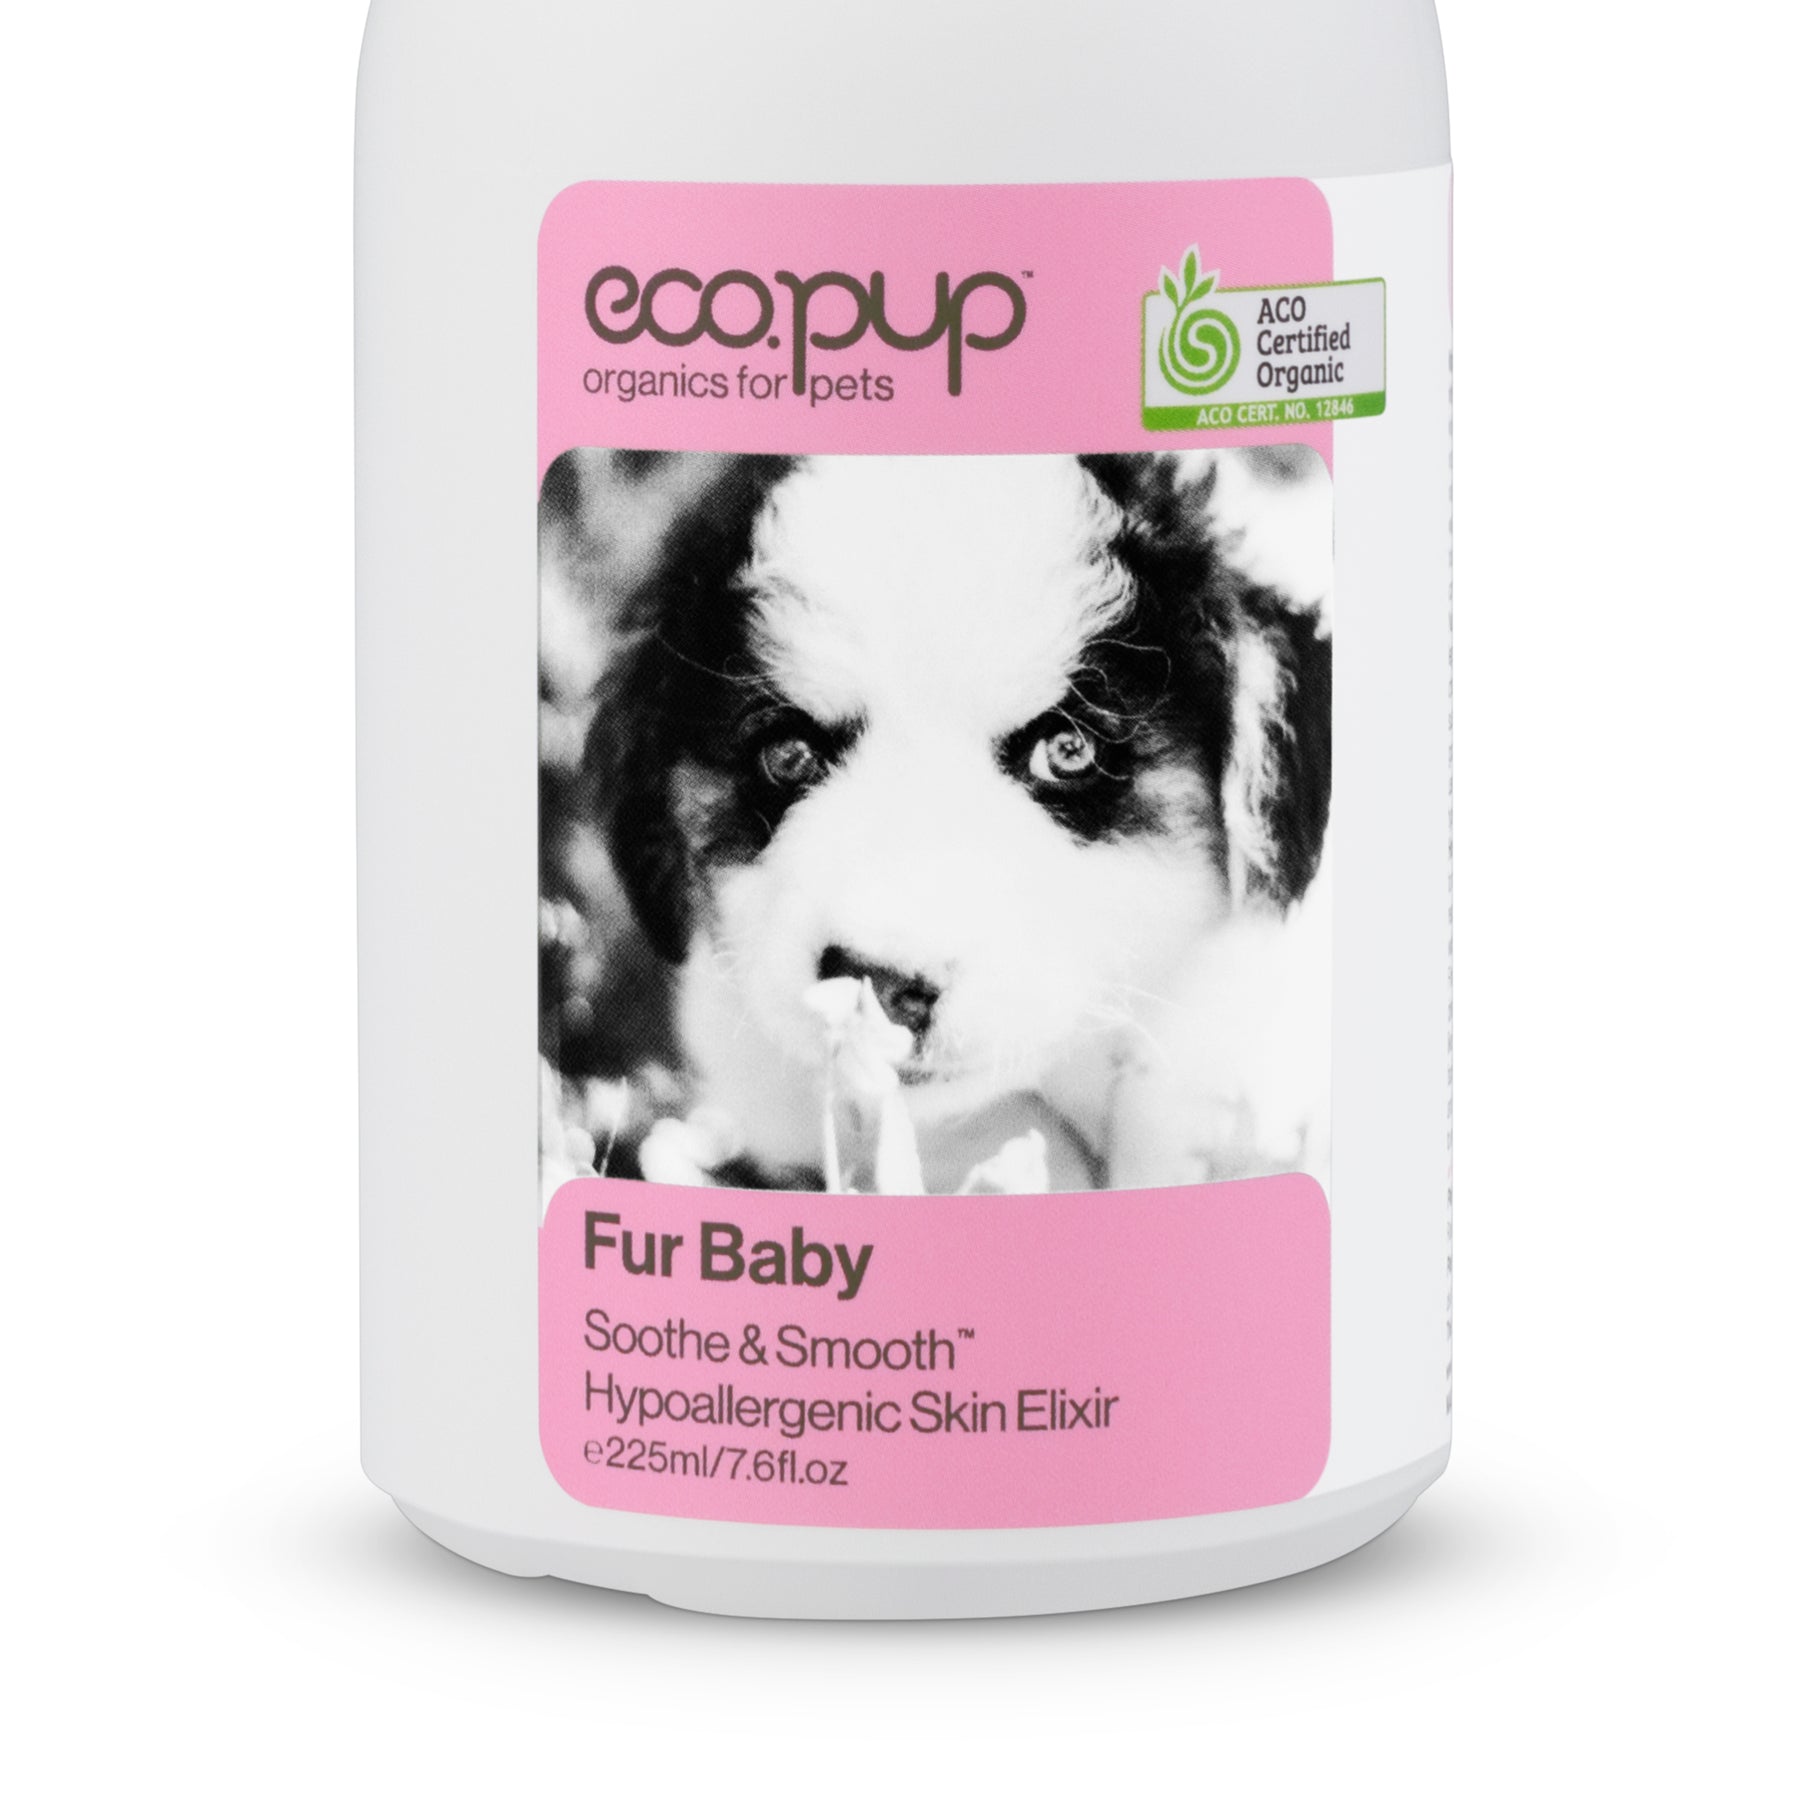 Eco.pup Fur Baby Soothe & Smooth Hypoallergenic Skin Elixir